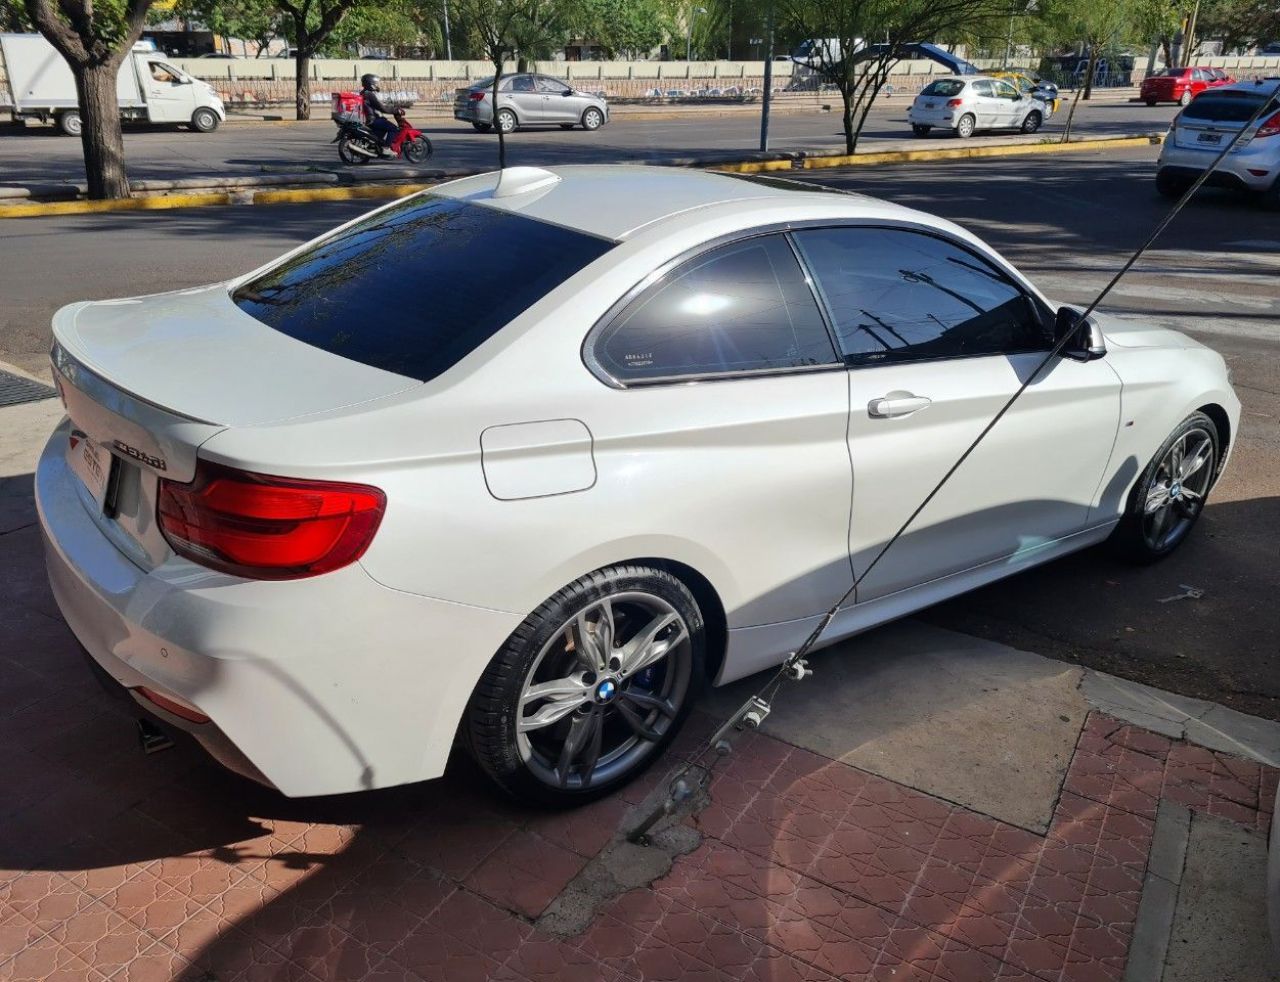 BMW Serie 2 Usado Financiado en Mendoza, deRuedas